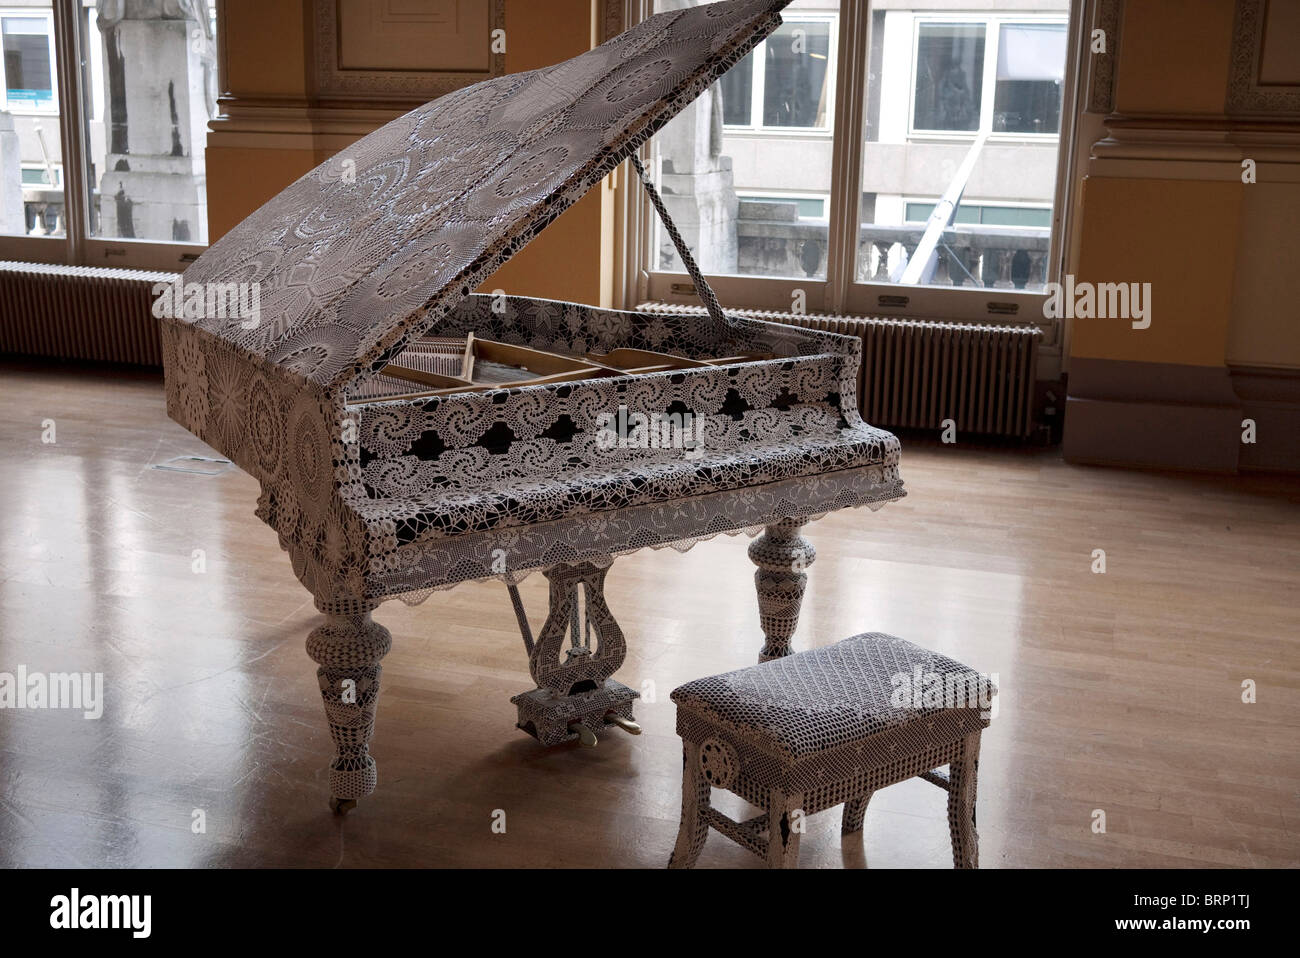 Piano enveloppé dans la dentelle par l'artiste portugaise Joana Vasconcelos. Exposition à la galerie Haunch of Venison, Londres. Banque D'Images